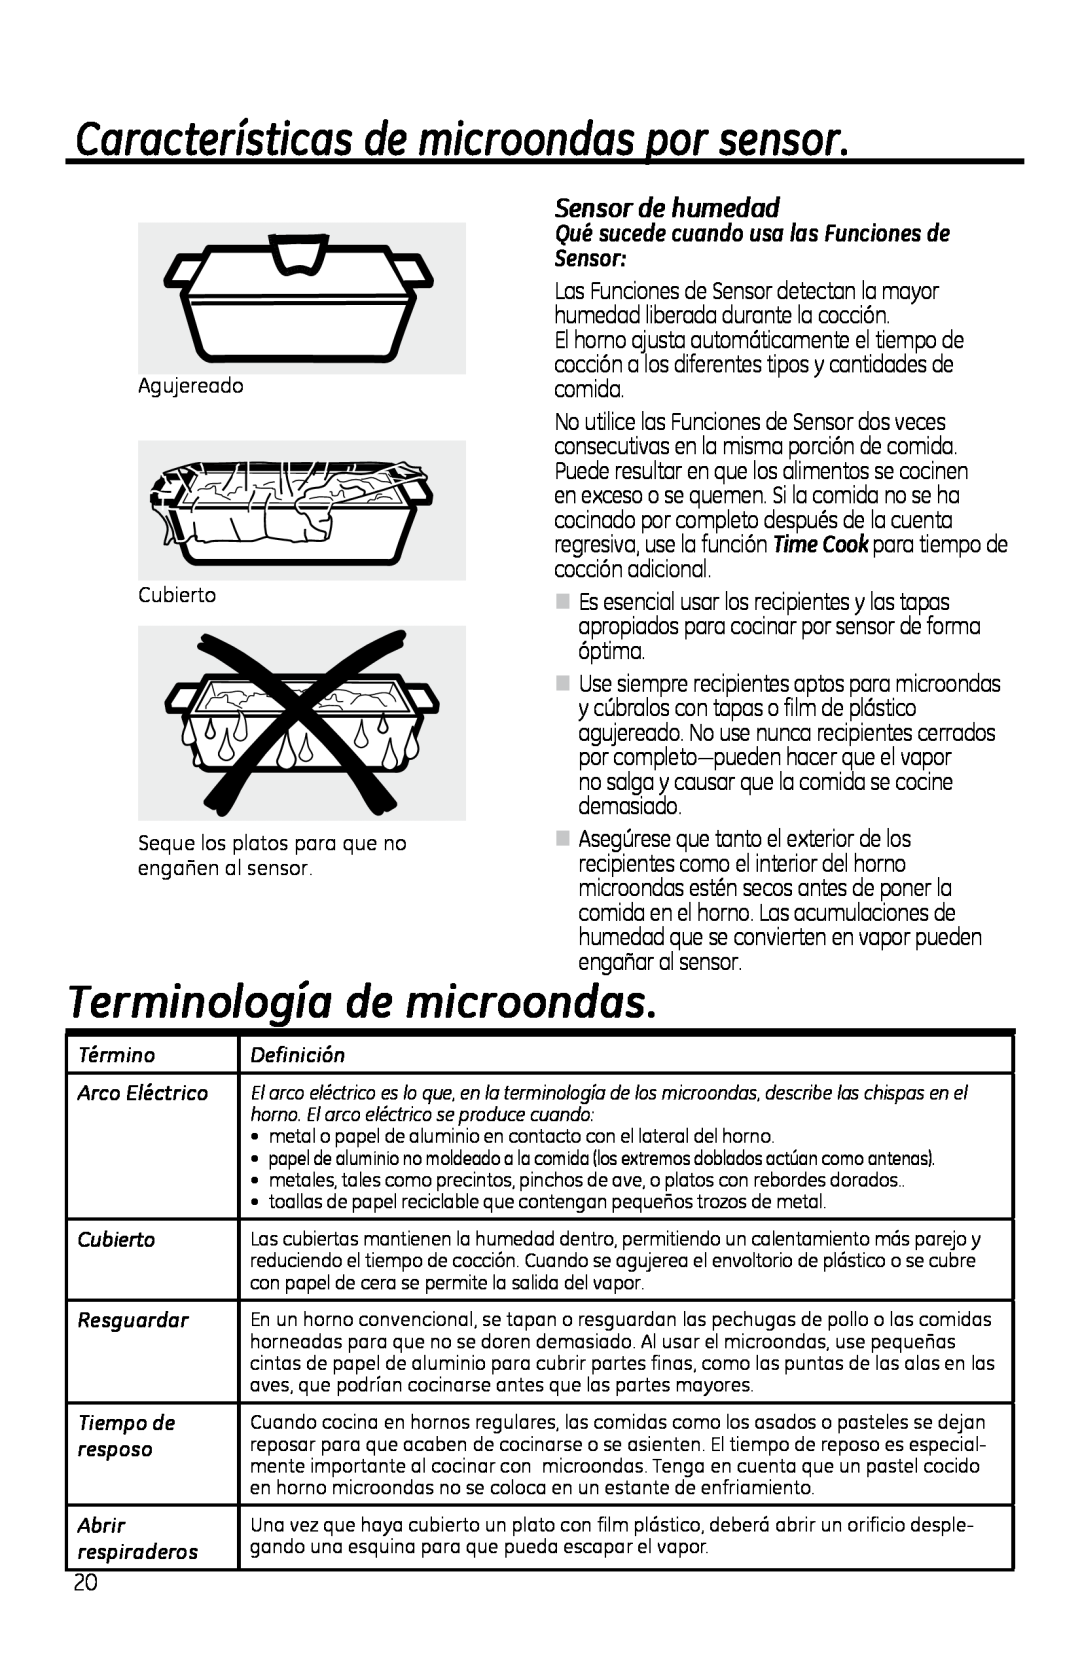 GE PVM1970 owner manual Características de microondas por sensor, Terminología de microondas, Sensor de humedad 